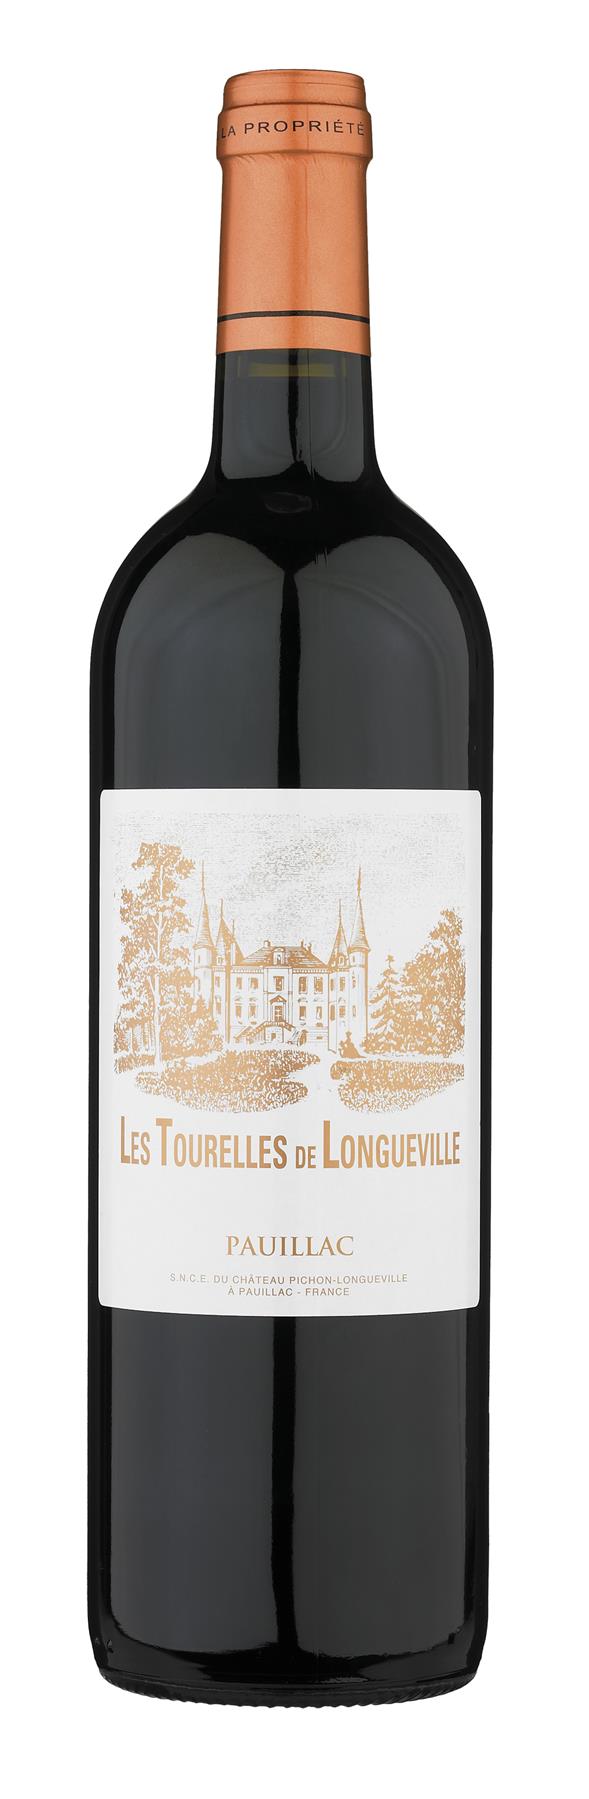 Les Tourelles de Longueville,           2. vin til Château Pichon-Longueville Baron, Pauillac, Frankrig